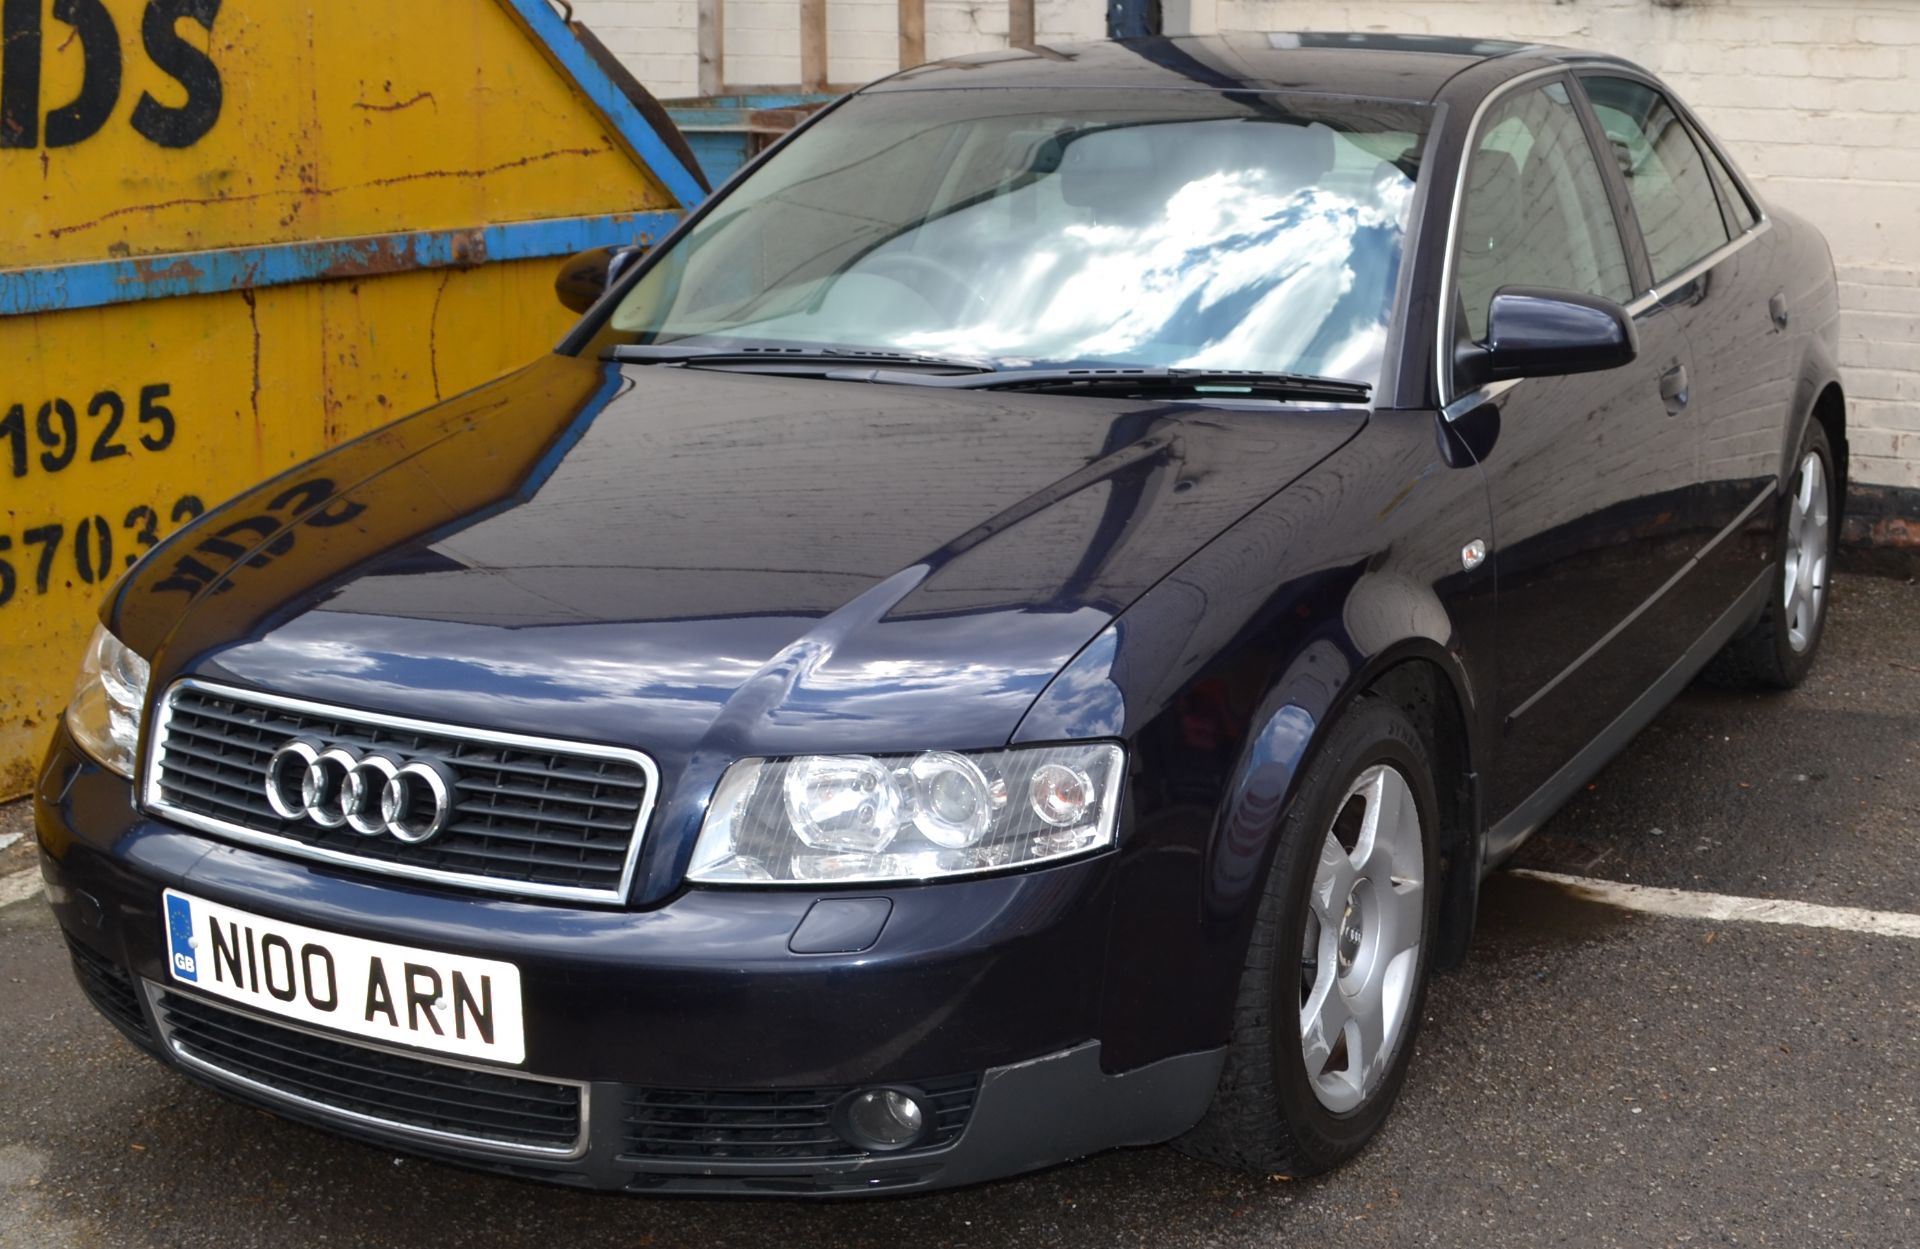 2001 Audi A4 SE Auto in Dark Blue 2.4L Petrol (Non Runner) - CL011 - Location: Altrincham WA14